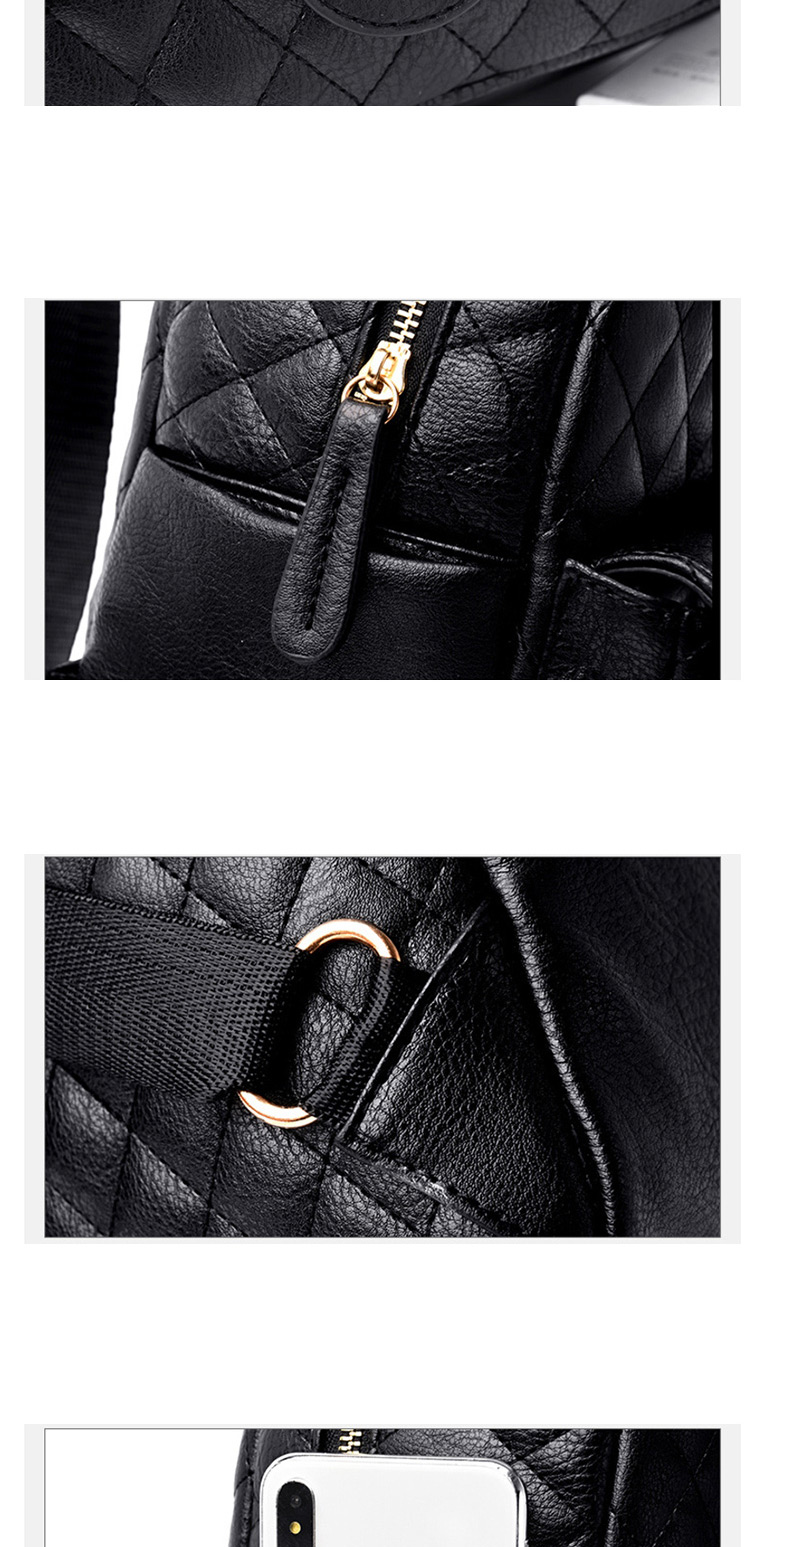 Fashion Black Chain Lock Rhombic Backpack,Backpack